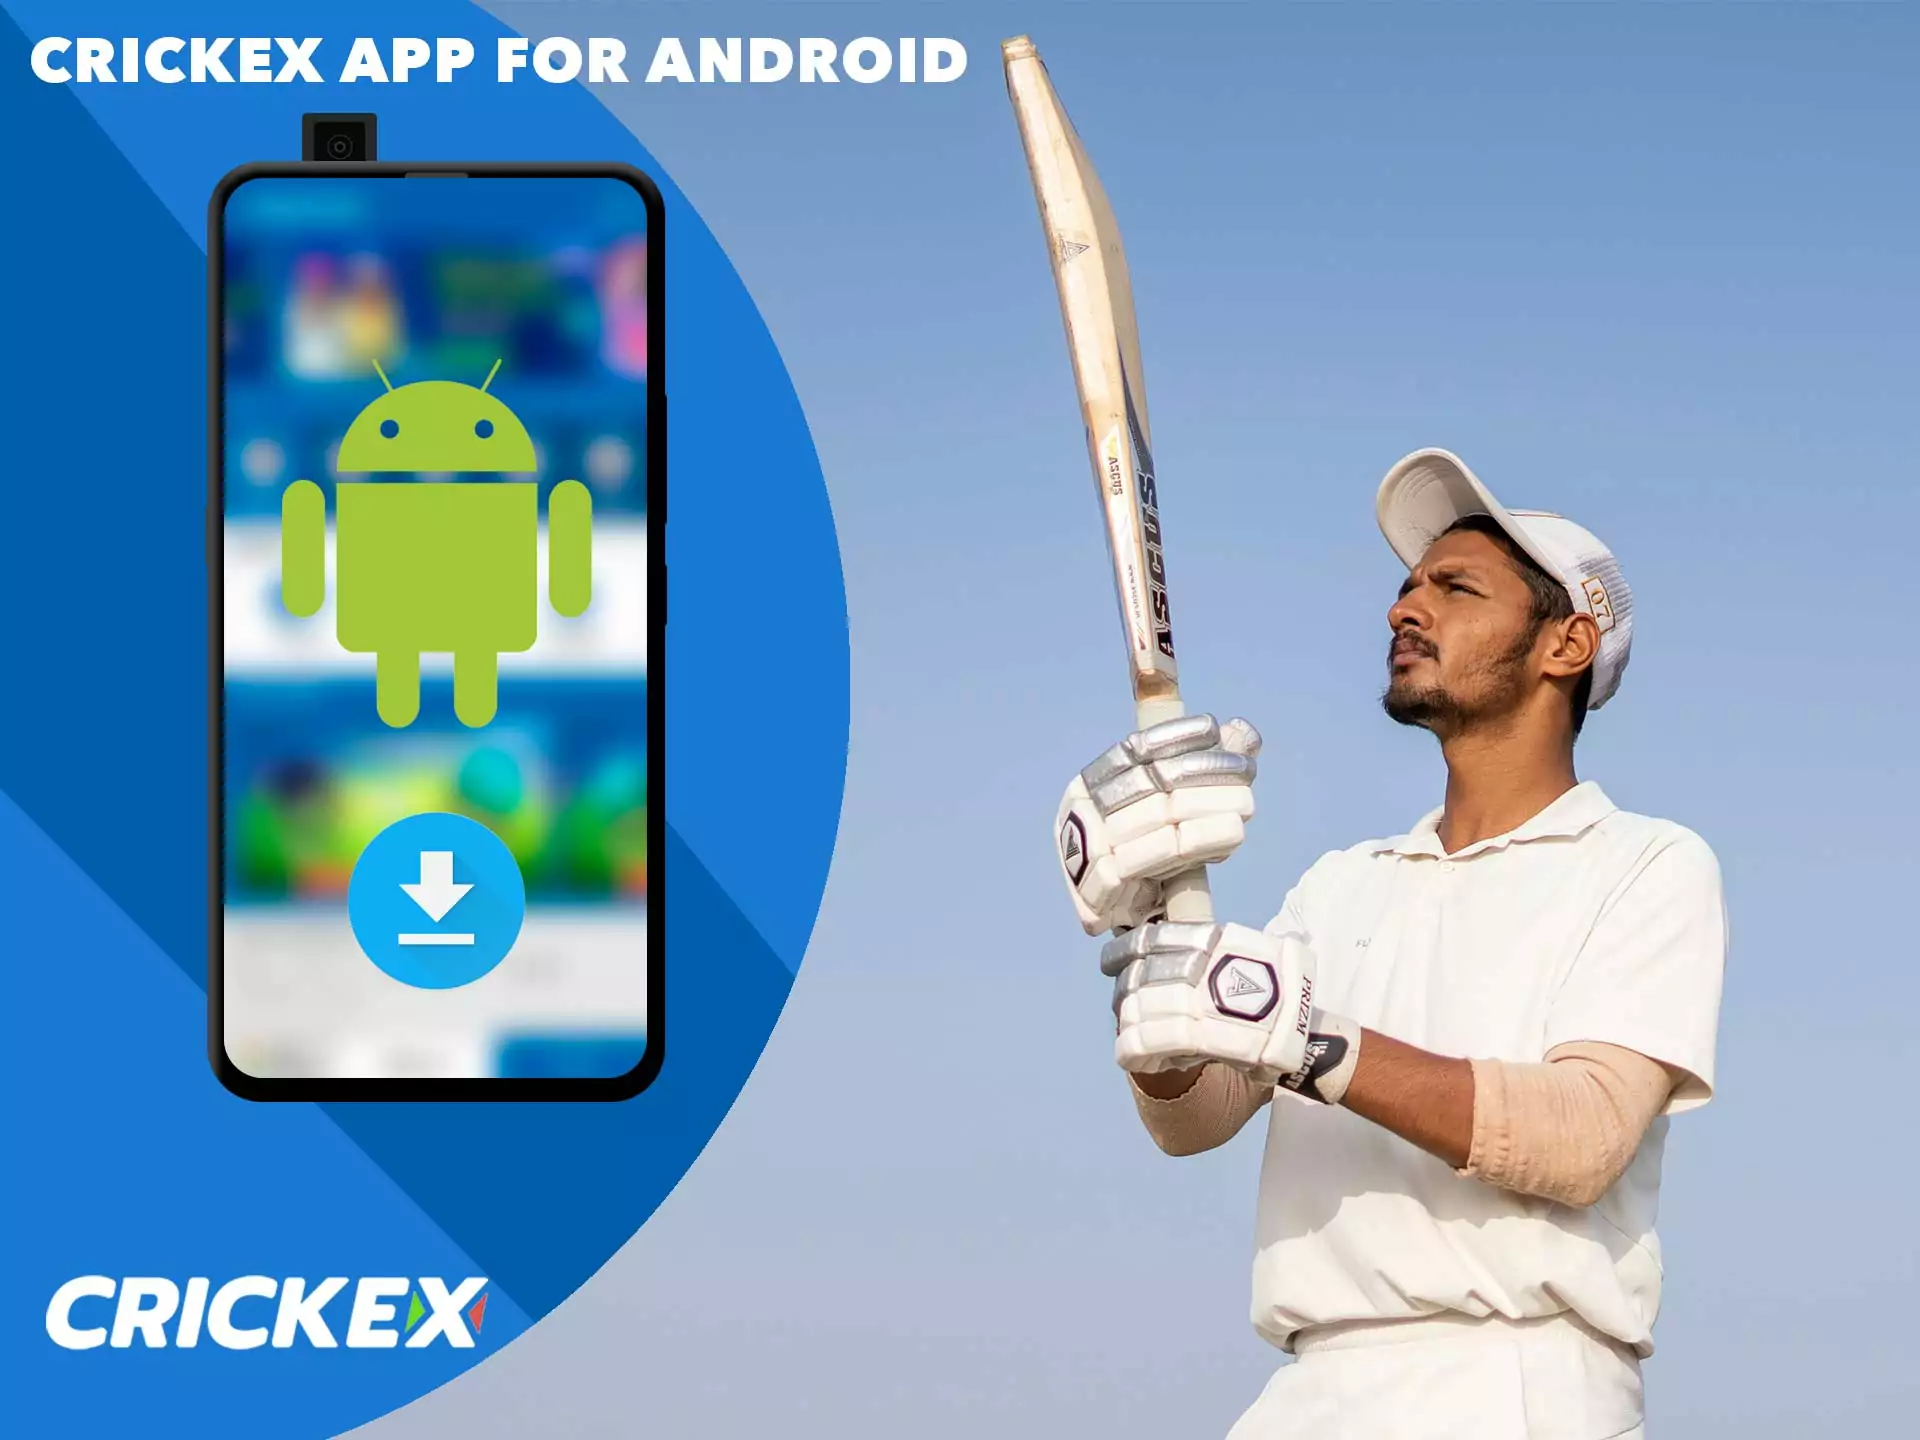 आप डाउनलोड कर सकते हैं Crickex एप Android के लिए मुक्त करने के लिए।